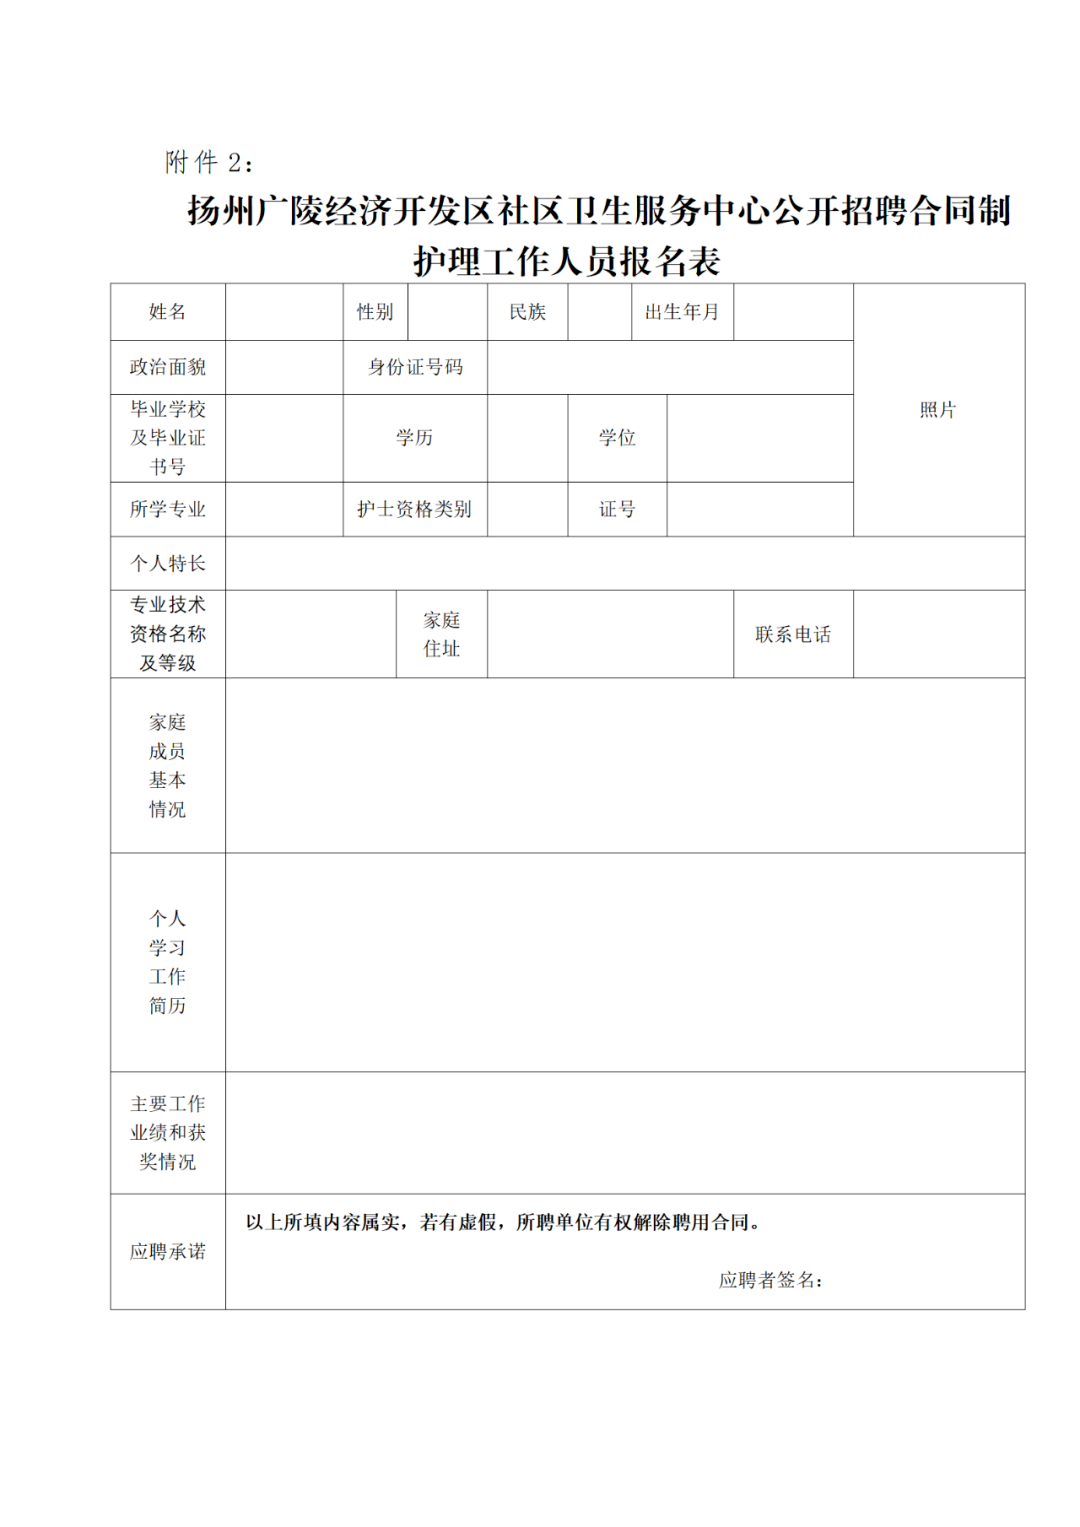 扬州广陵经济开发区社区卫生服务中心公开招聘4名合同制护理工作人员公告